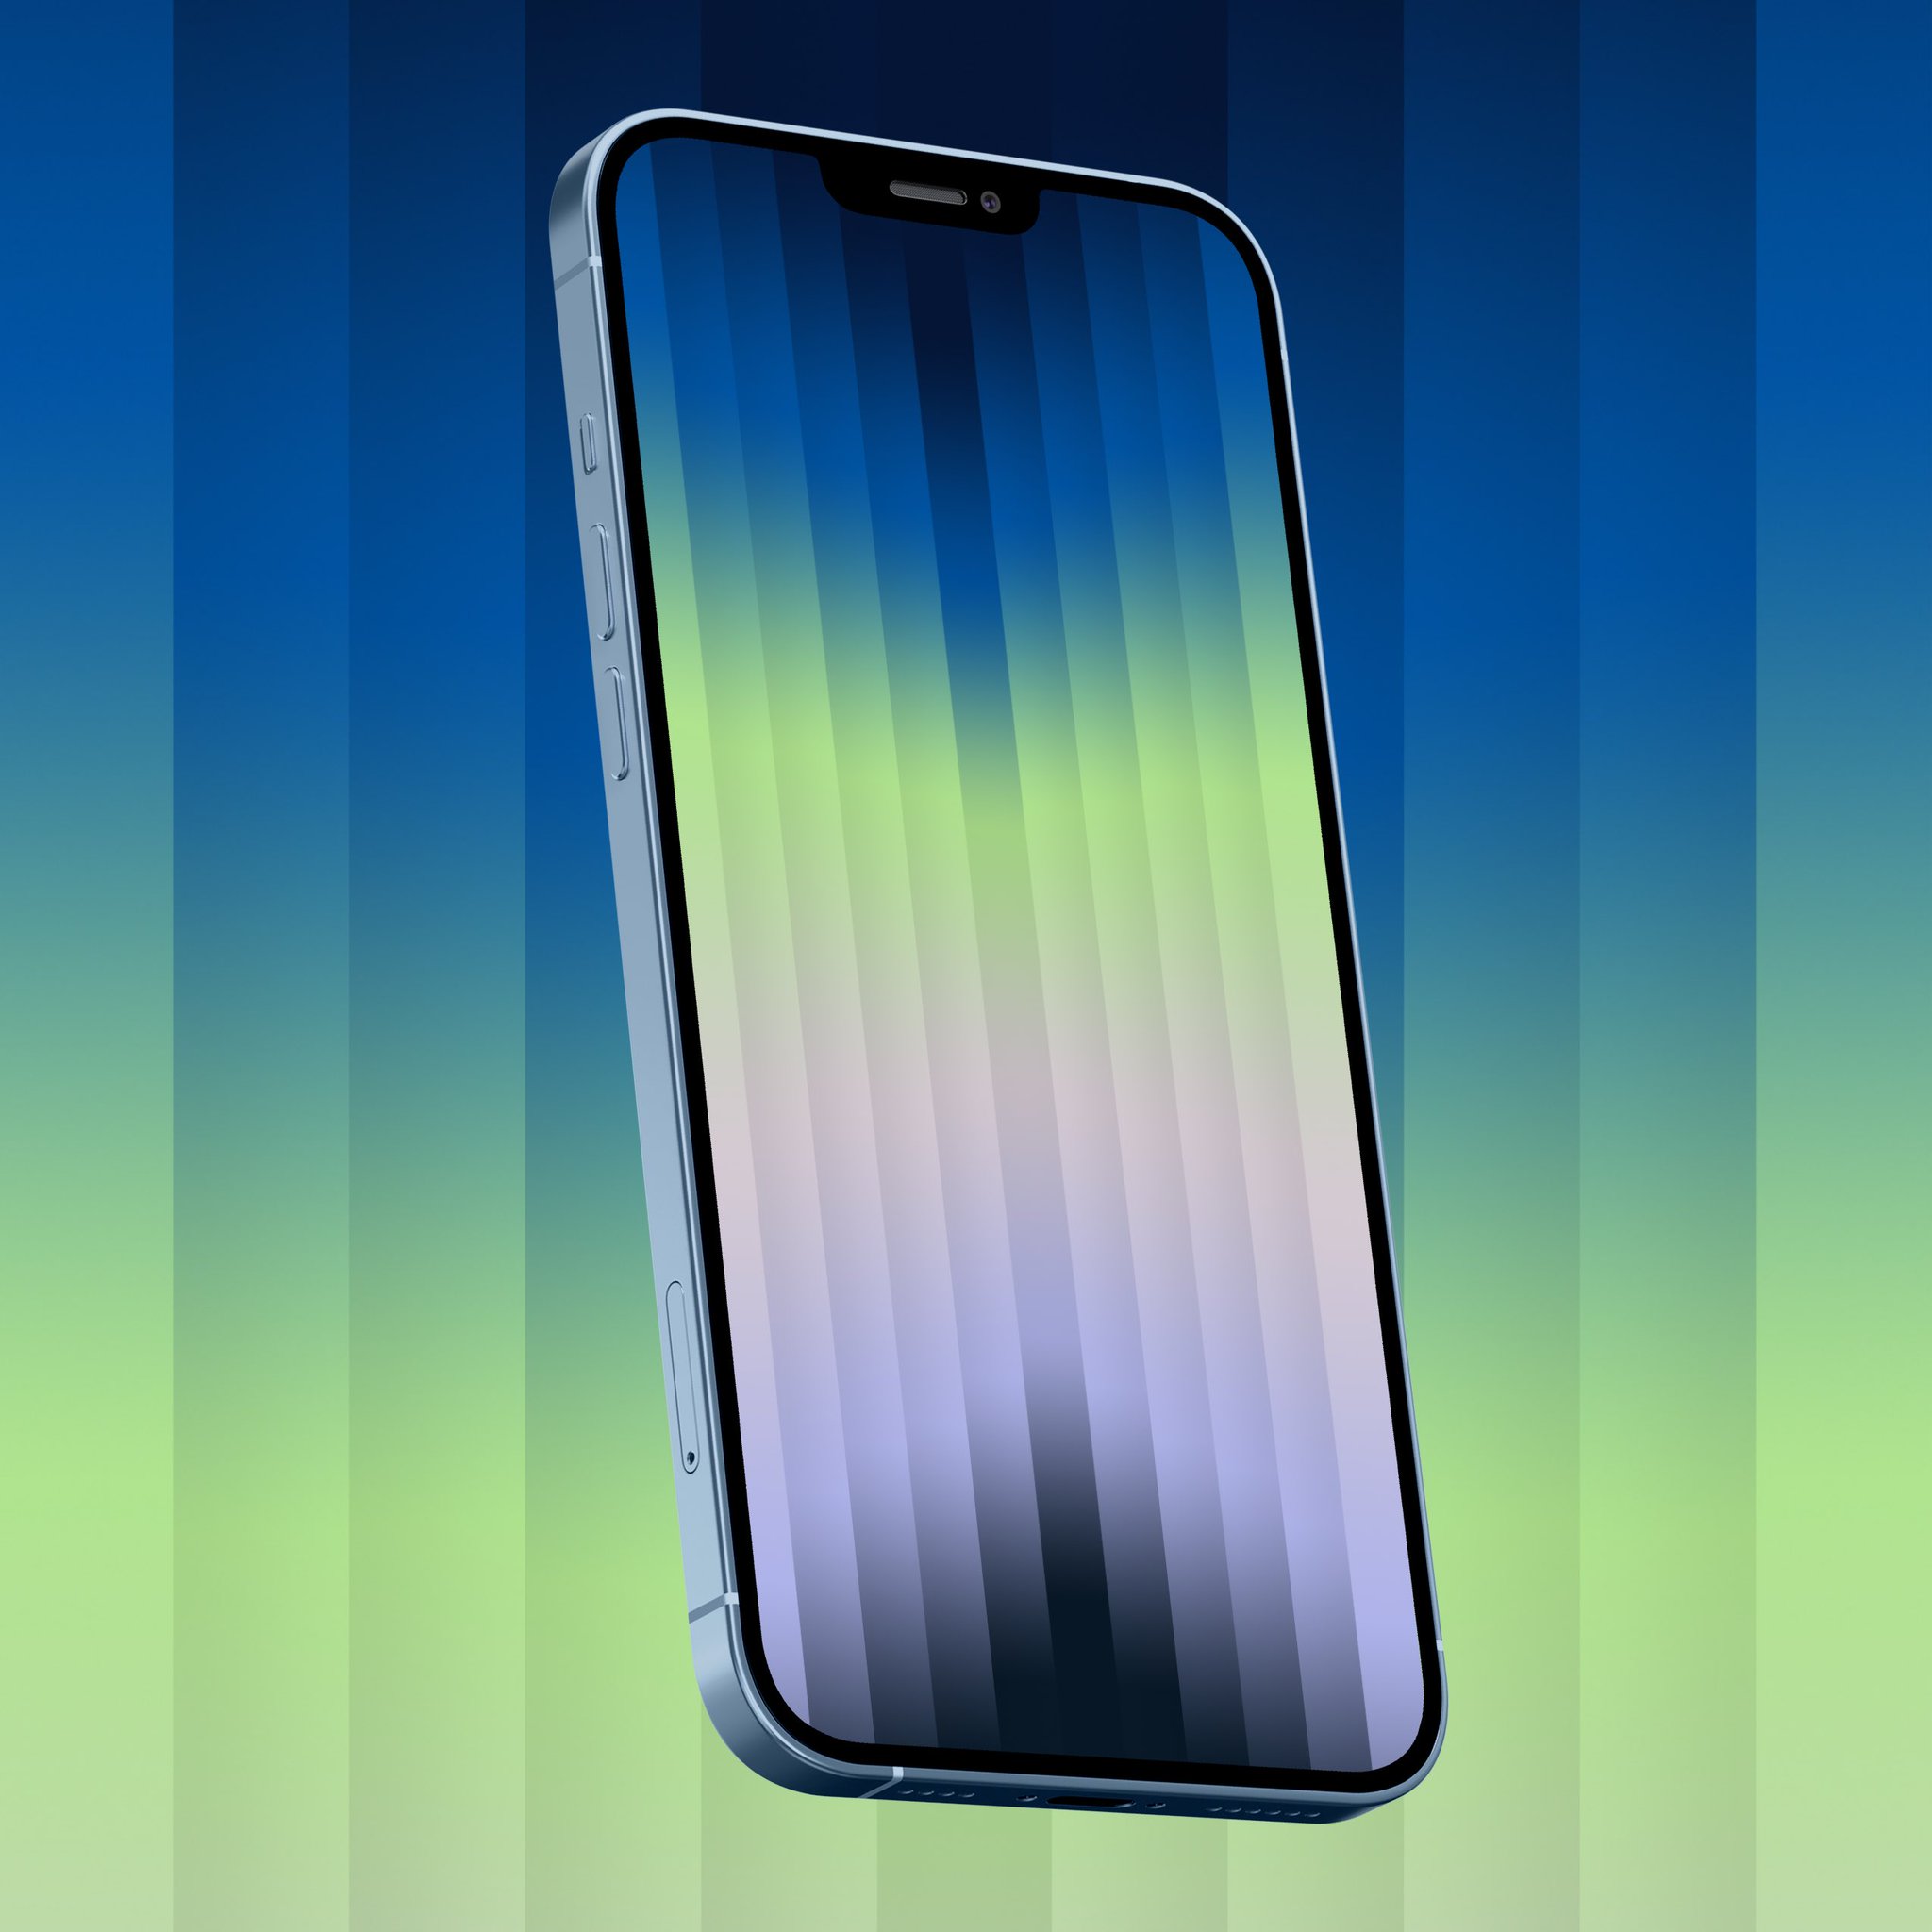 Mời tải bộ hình nền iPhone SE 2020 siêu đẹp mới ra mắt chính thức